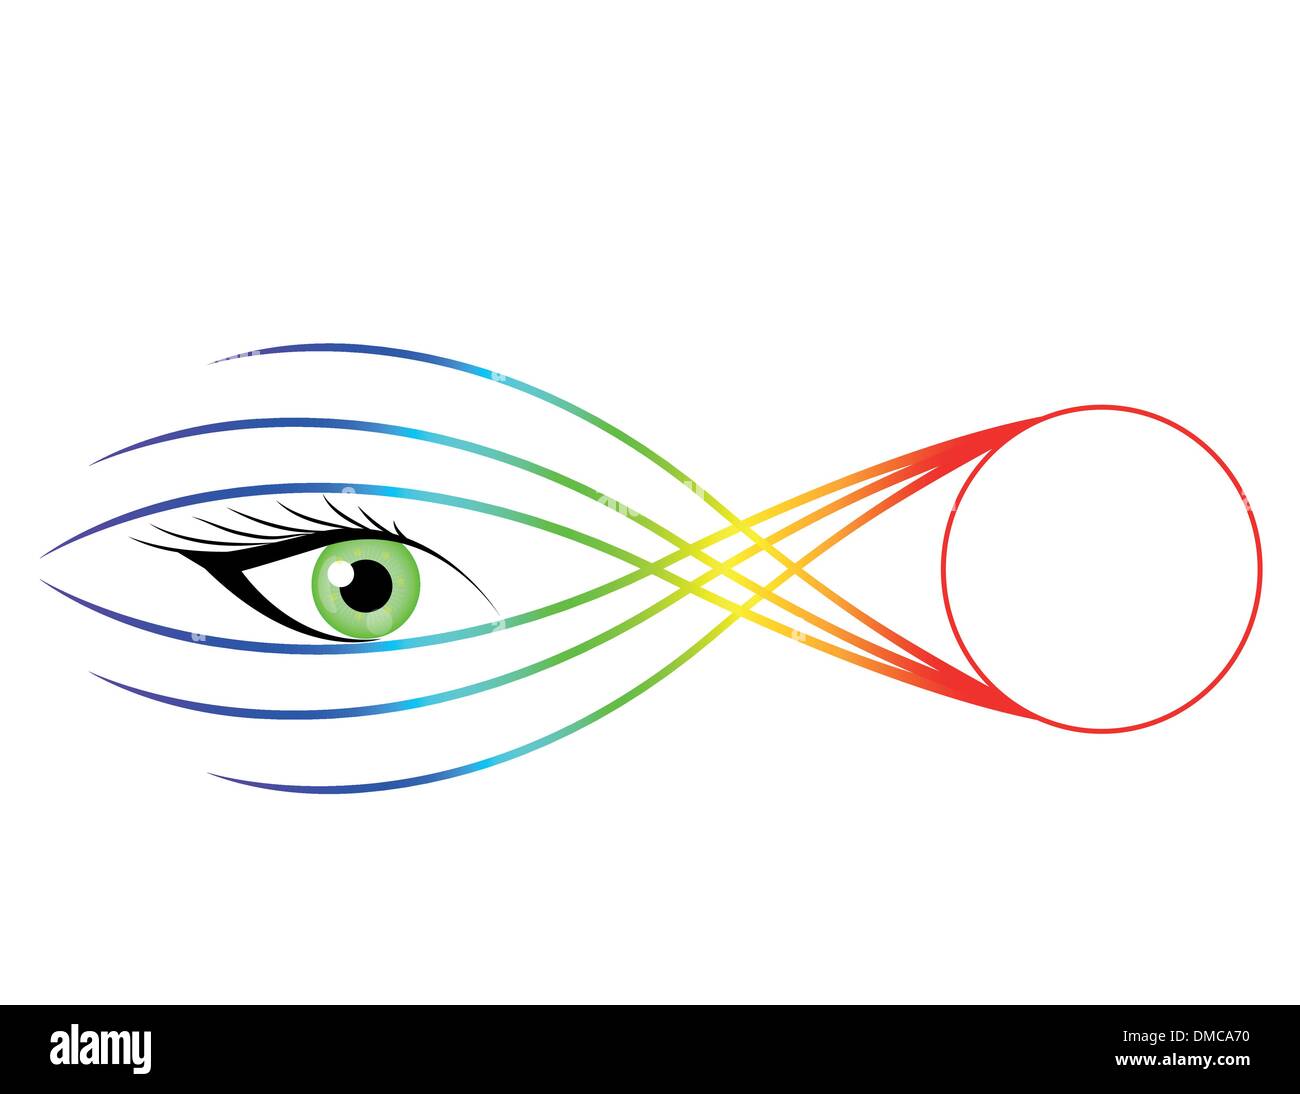 Impressionante illustrazione dell'occhio. Illustrazione Vettoriale